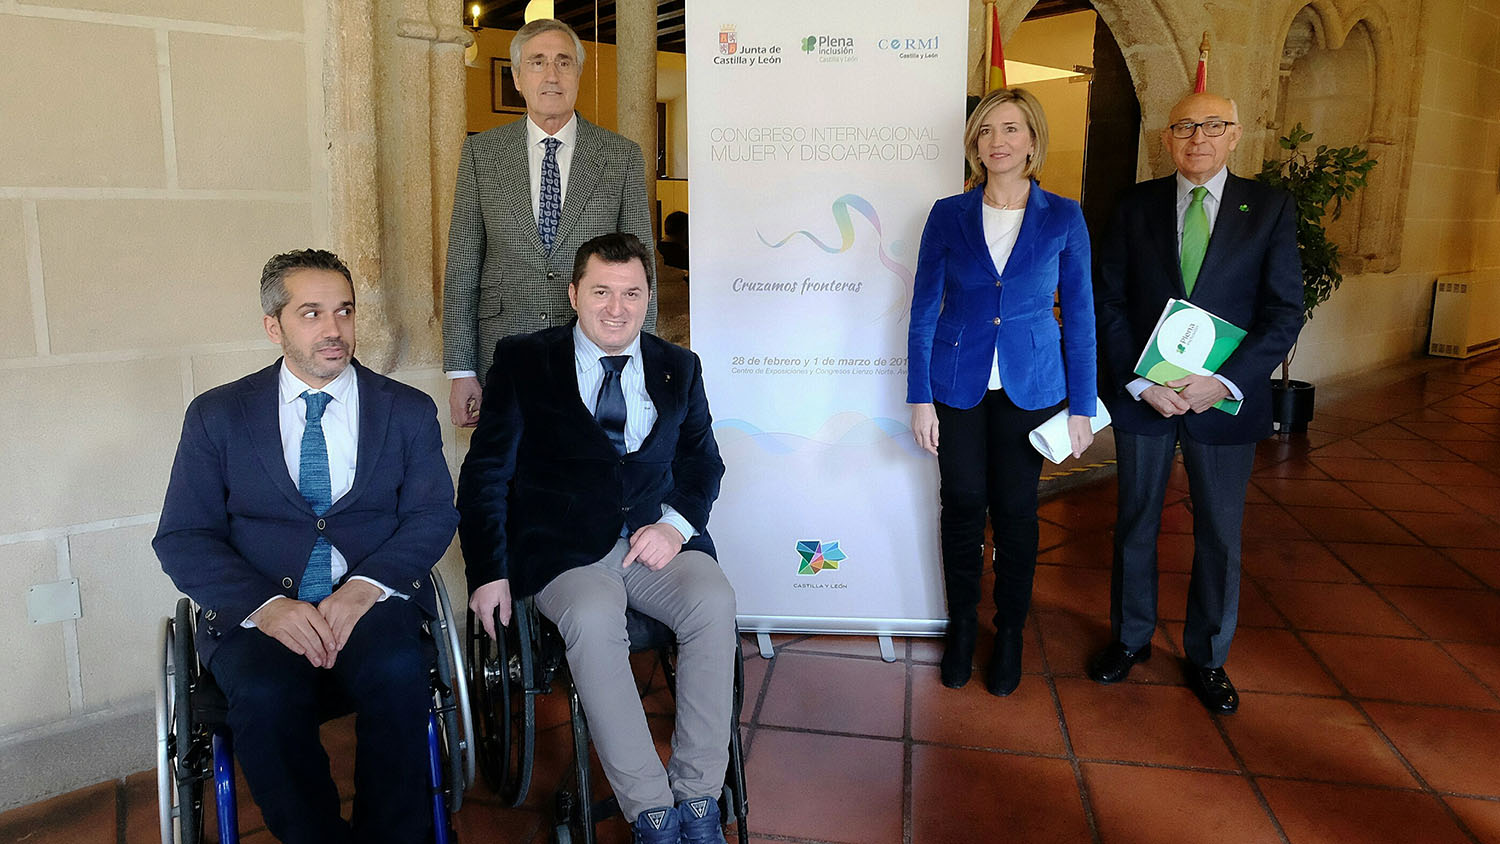 El Congreso Internacional Mujer y Discapacidad reunirá en Ávila a más de 400 profesionales